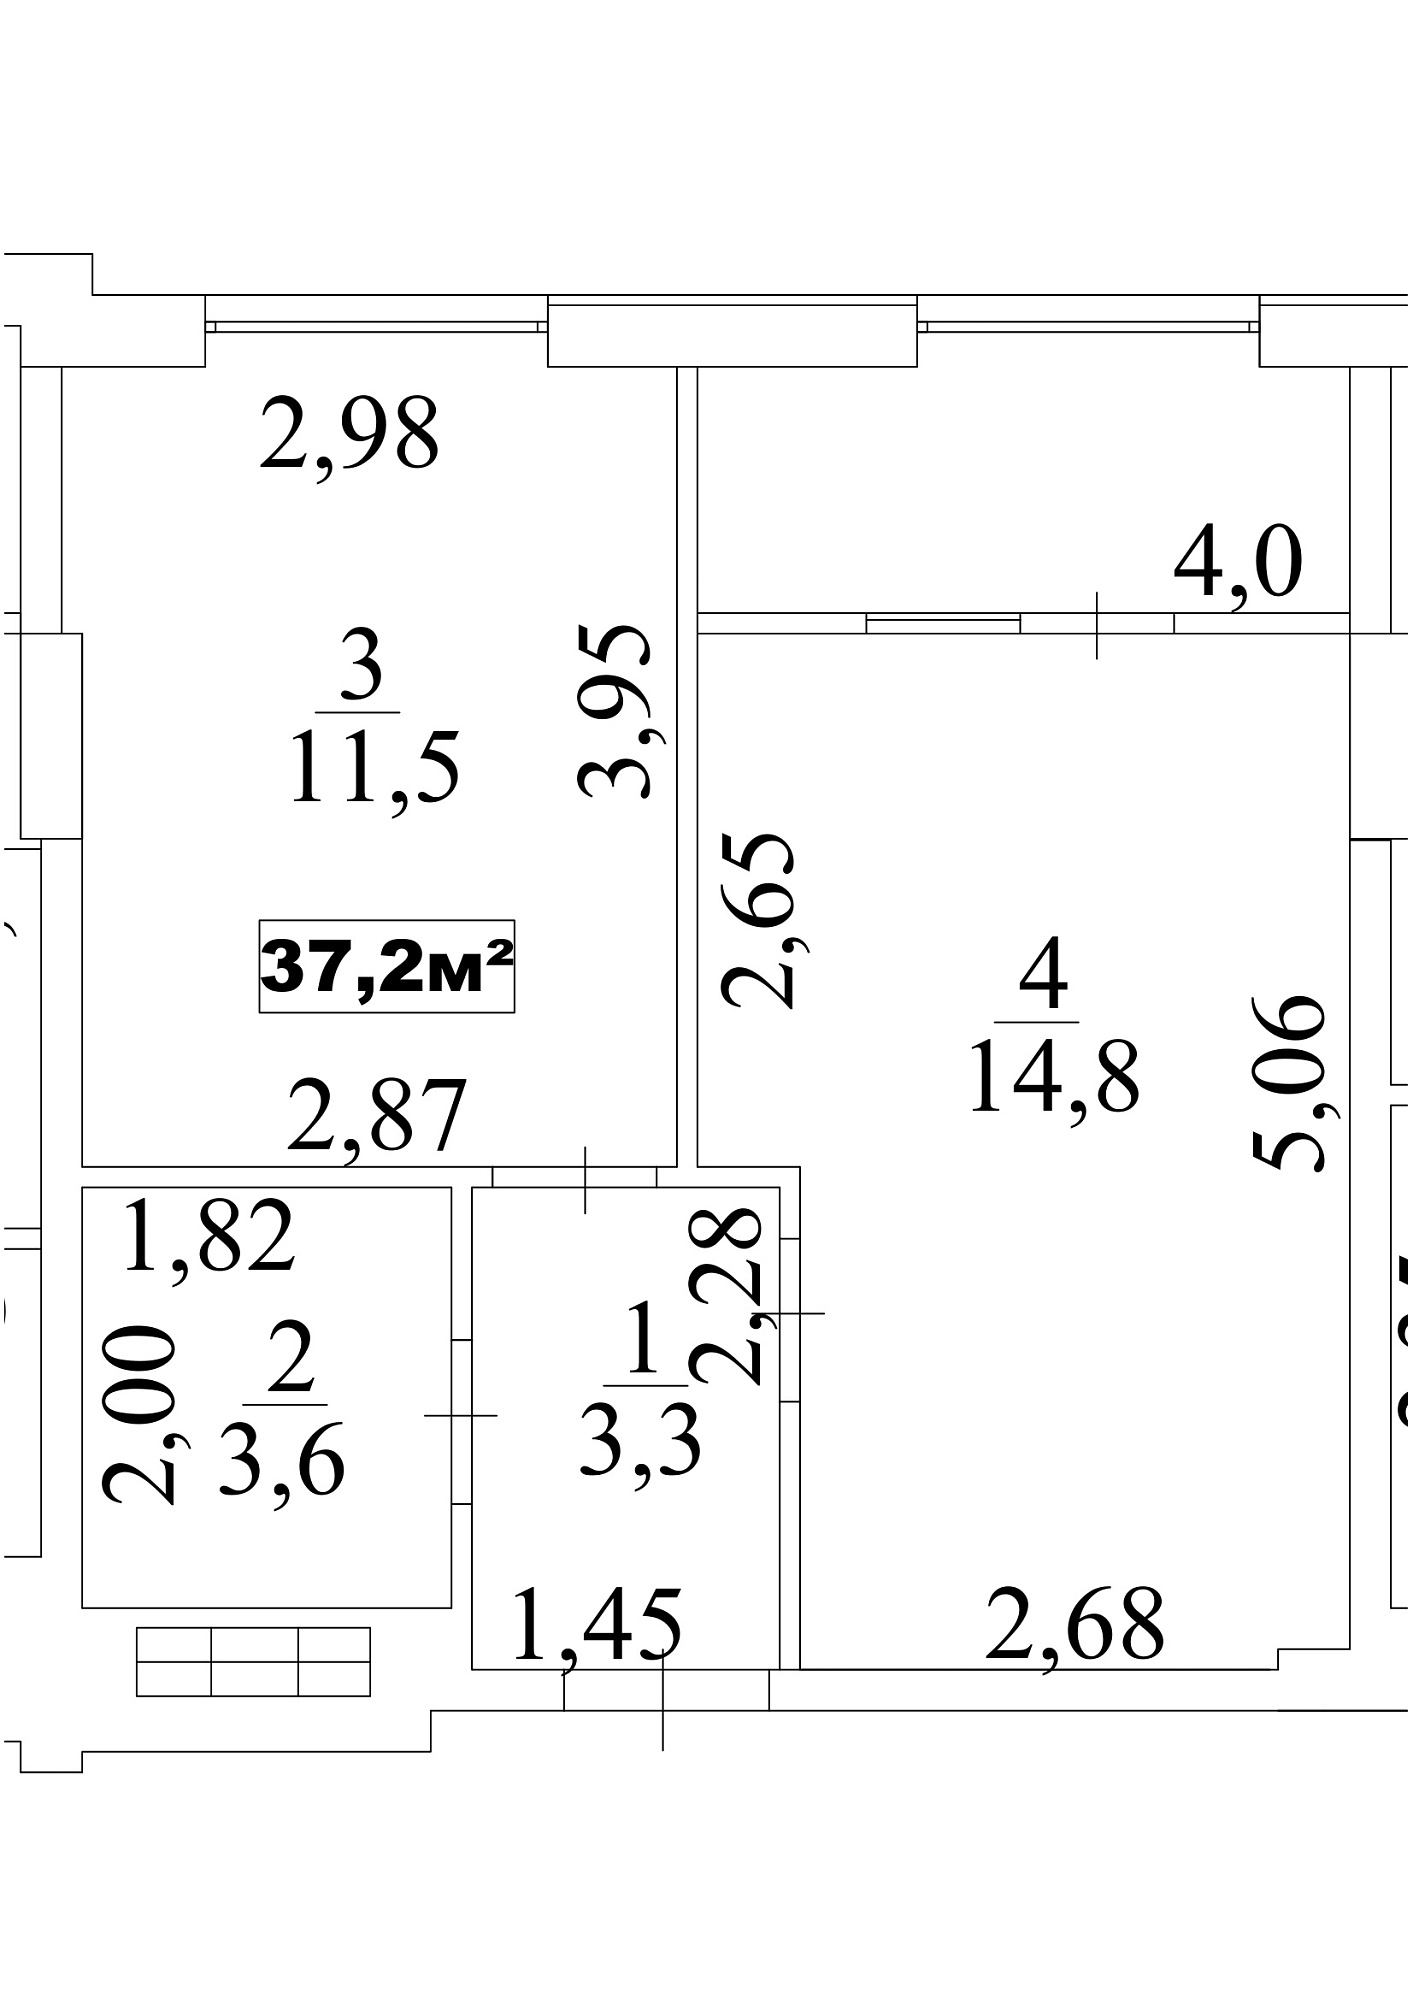 Планировка 1-к квартира площей 37.2м2, AB-10-08/00069.